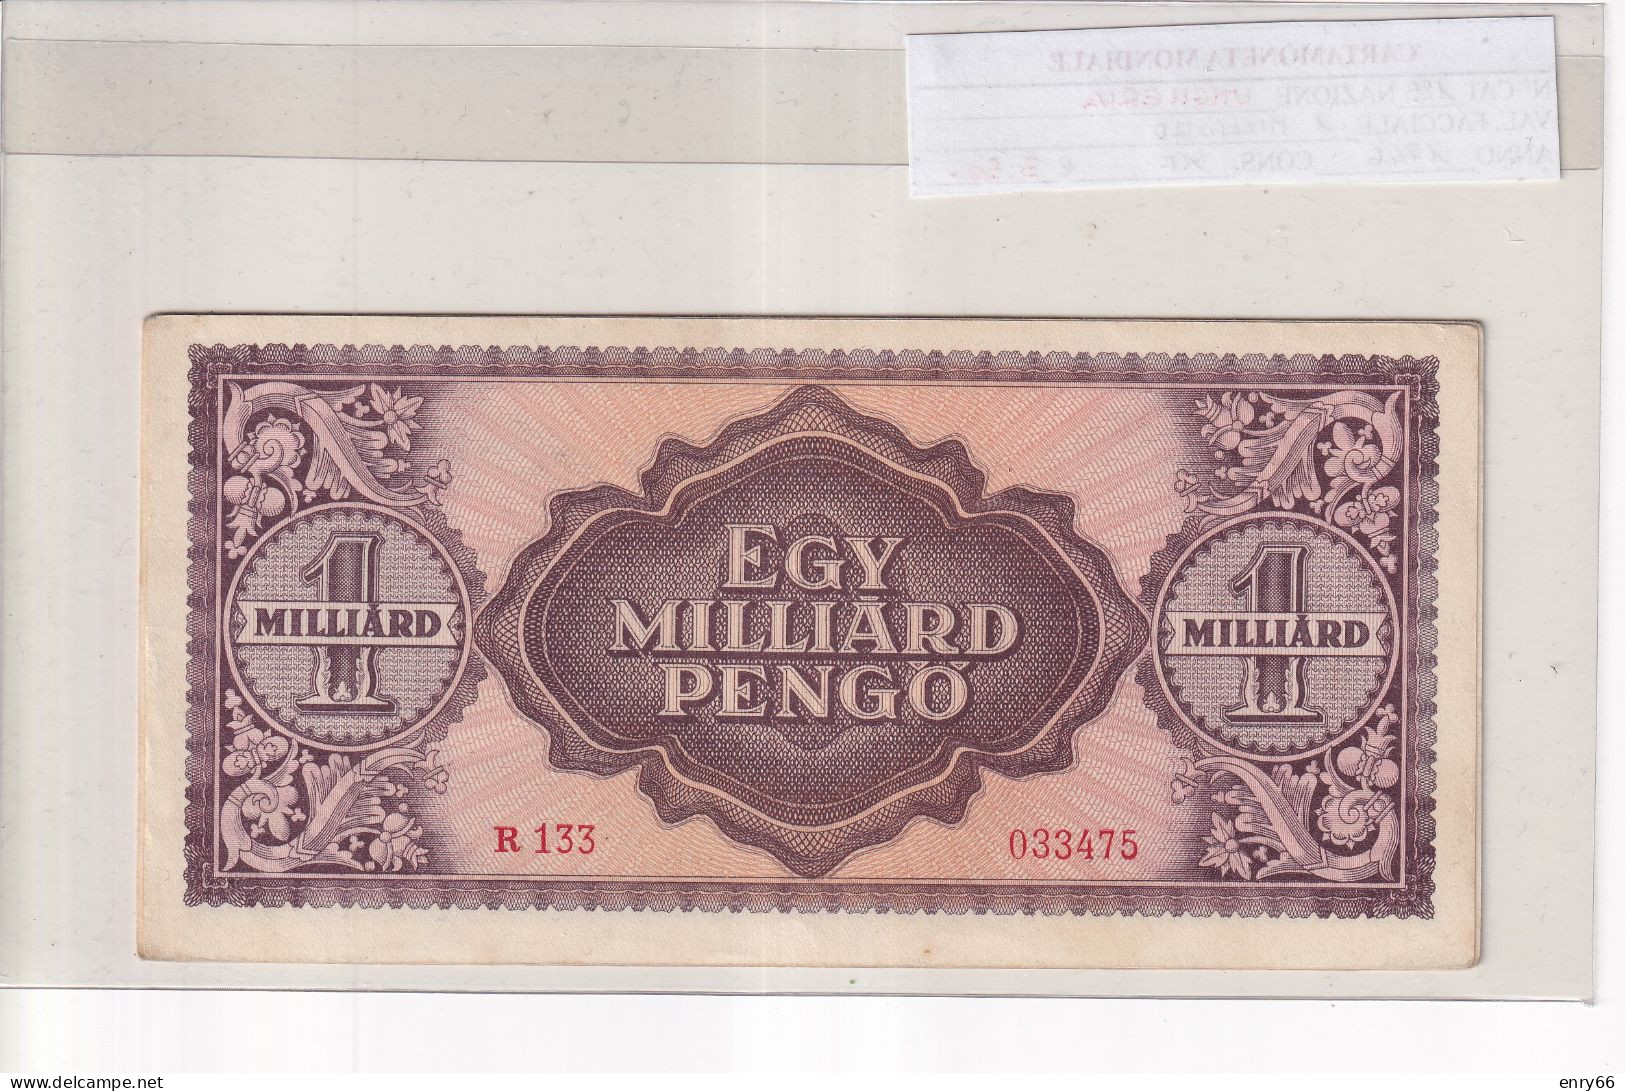 UNGHERIA  1 MILLIARD PENGO 1946  P. 125 - Hungary